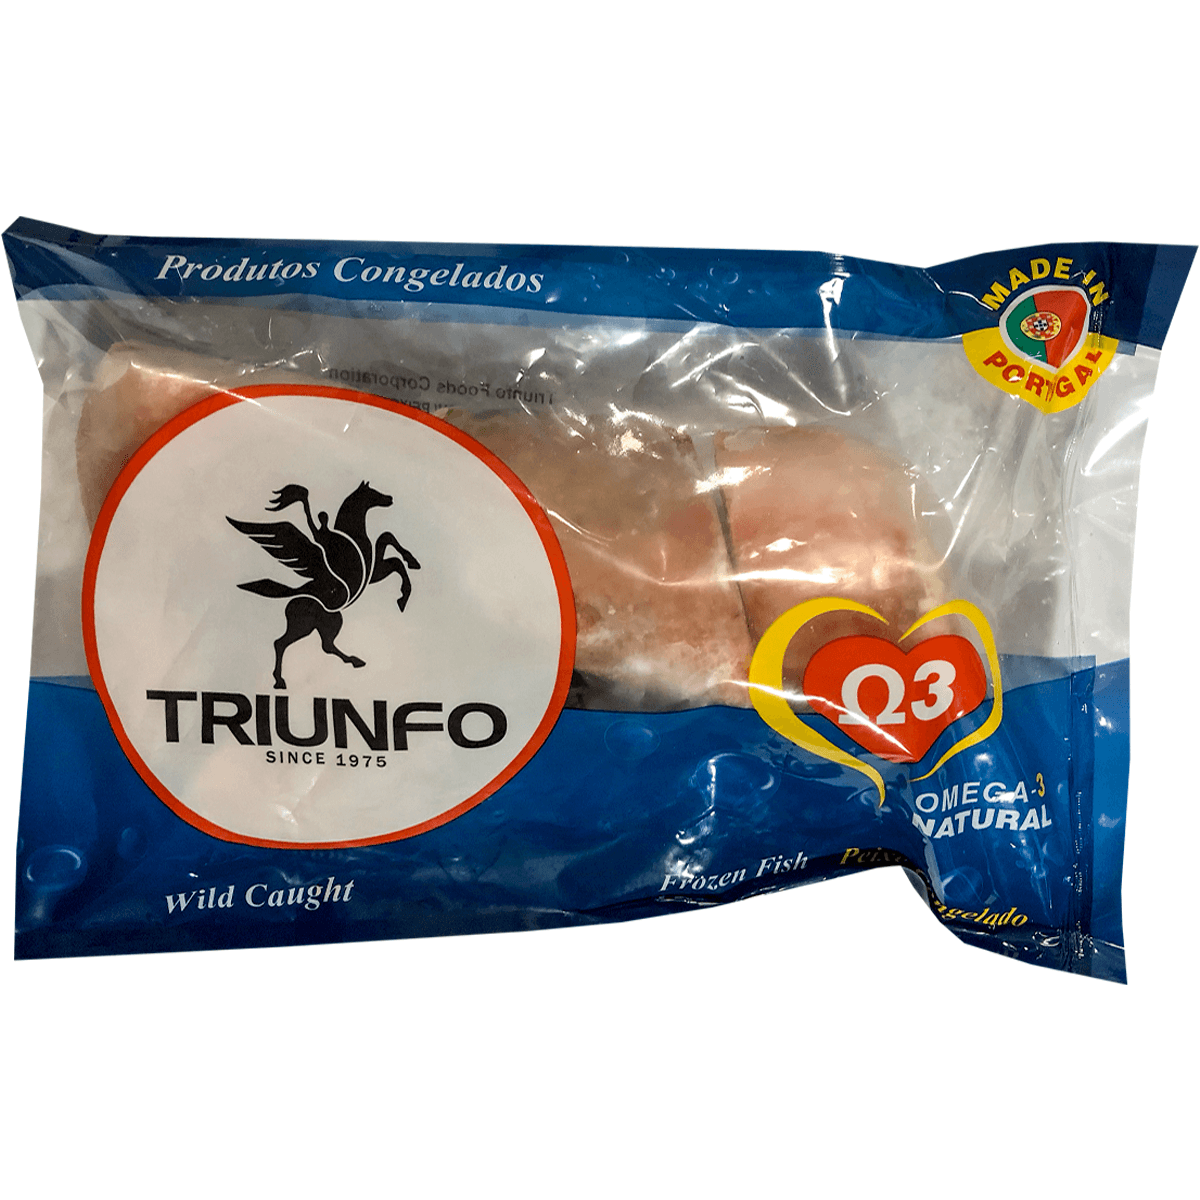 Triunfo Sliced Red Fish (Para Fritar) Bag 1.54lb